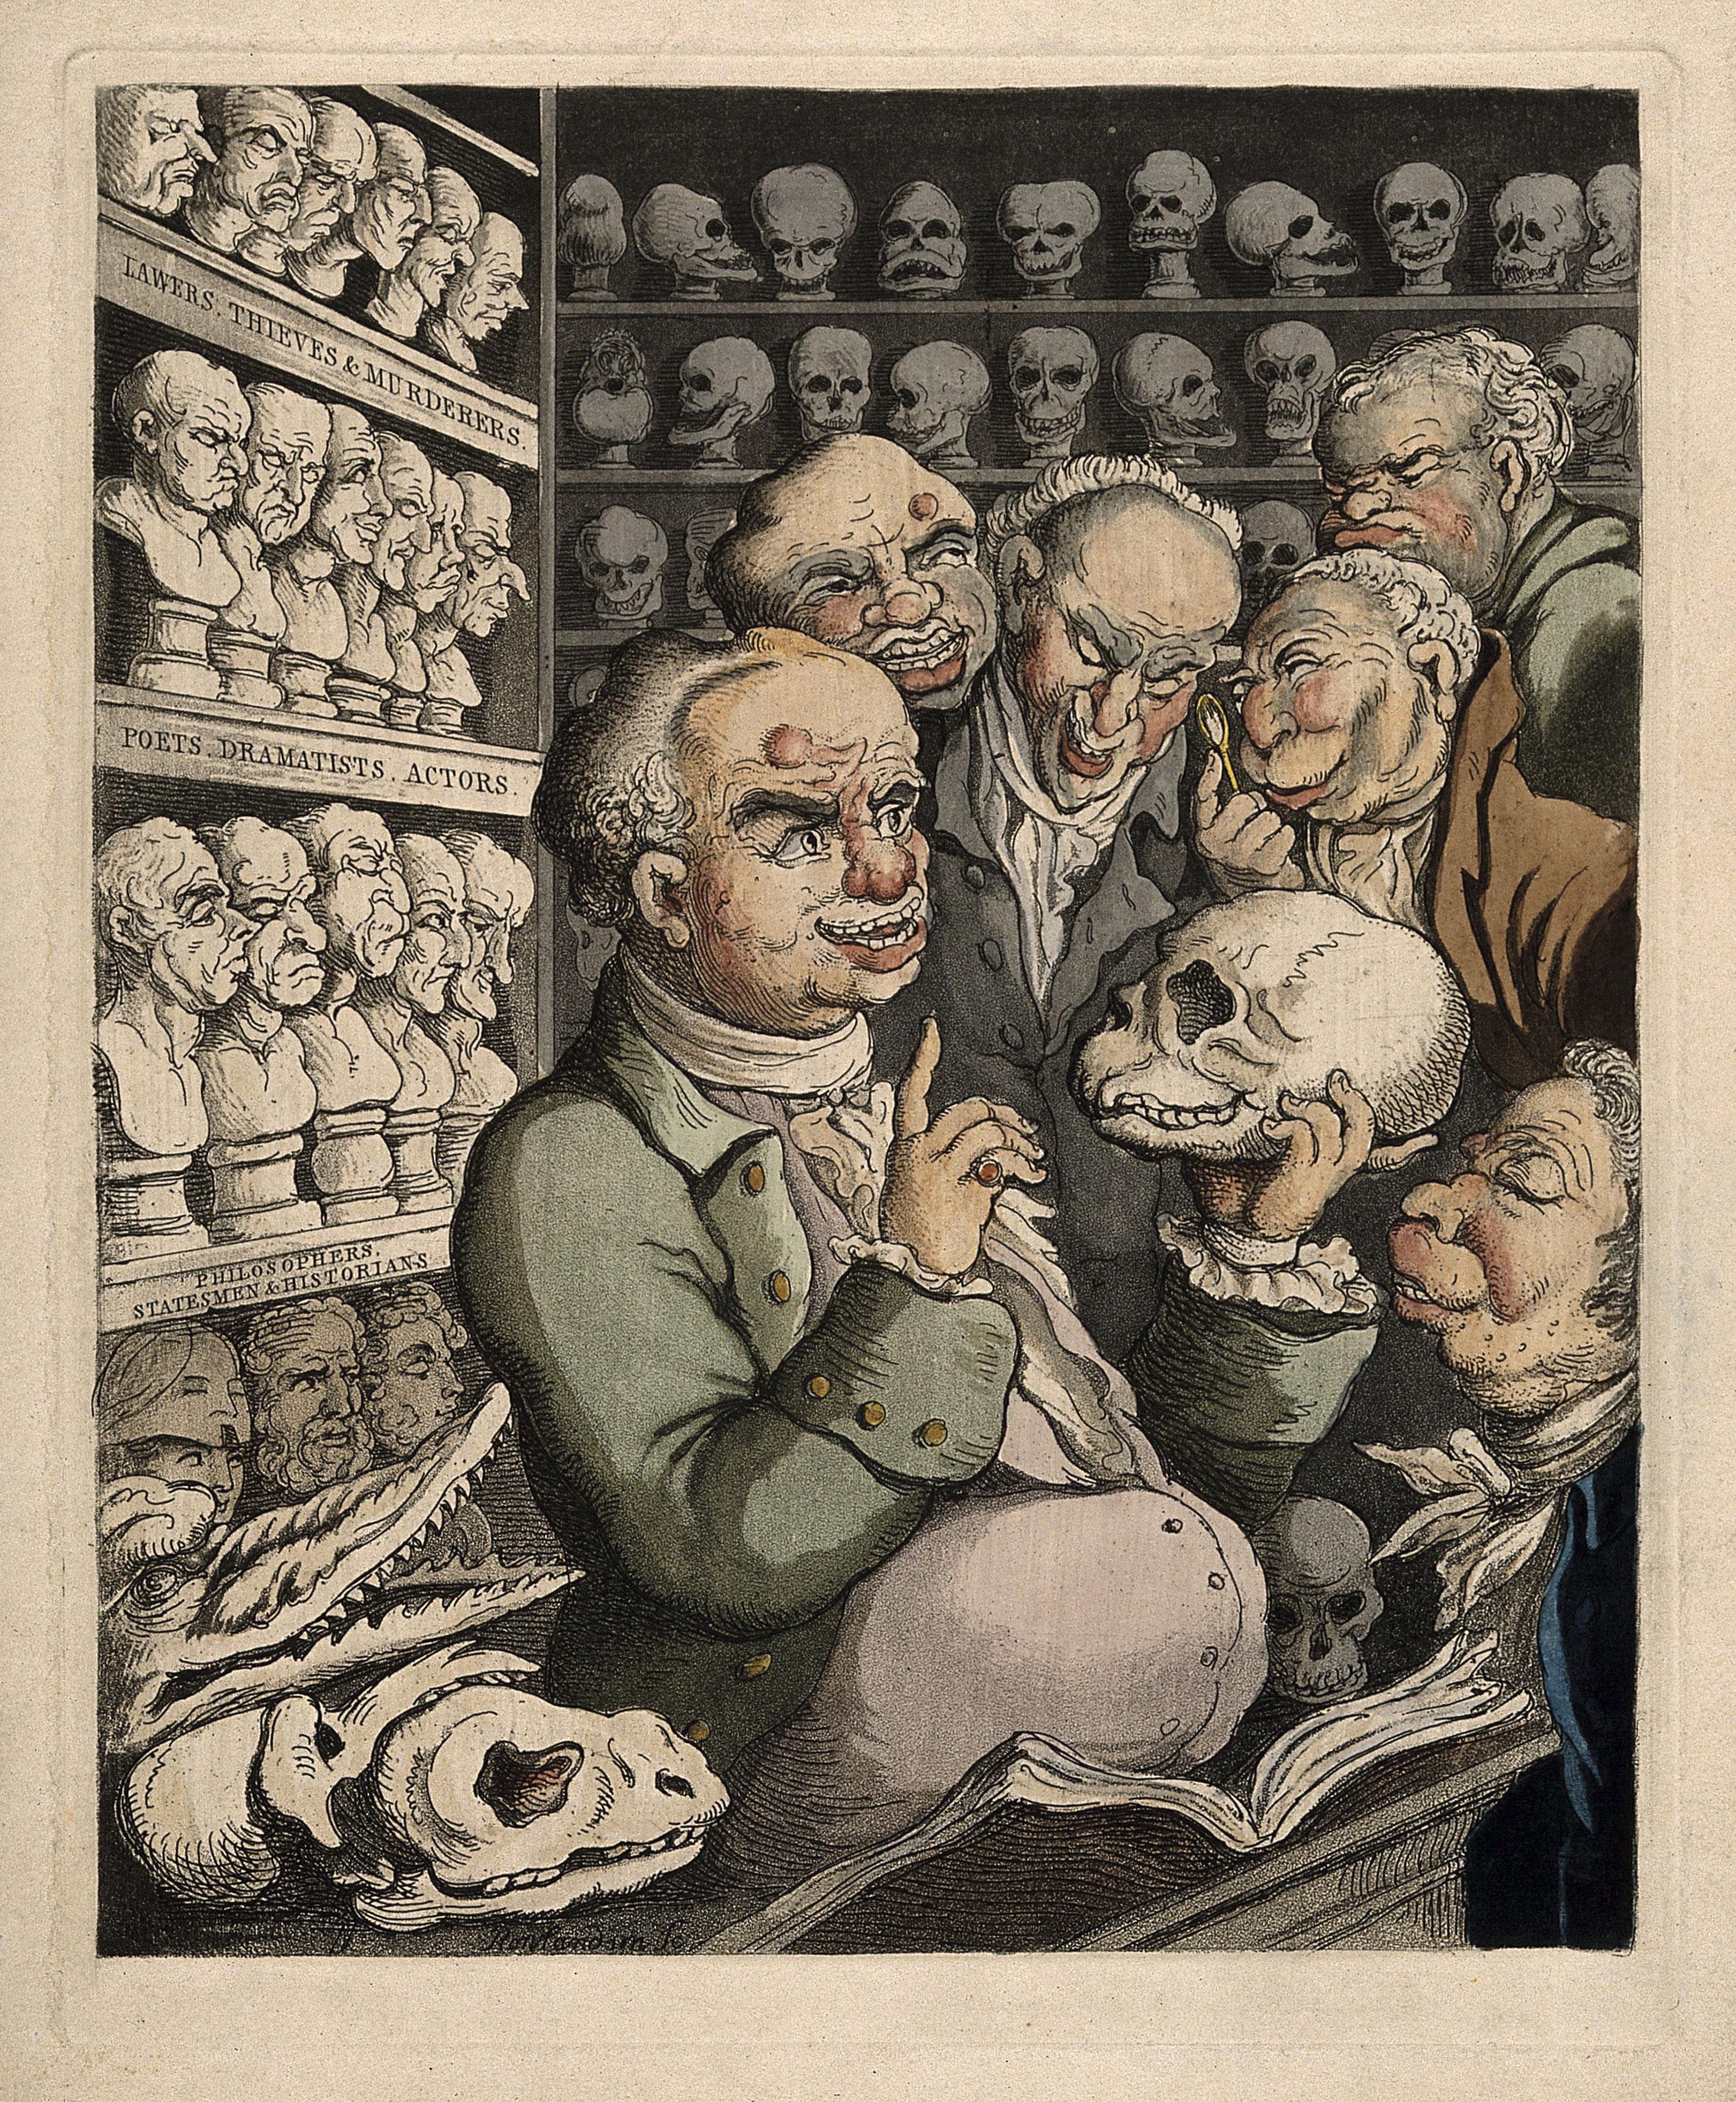 Franz Josef Gall, frenologiens opfinder, diskuterer med fem kolleger omgivet af sin store samling af kranier. Satirisk tegning af Thomas Rowlandson, 1808. Ill.: The Wellcome Library